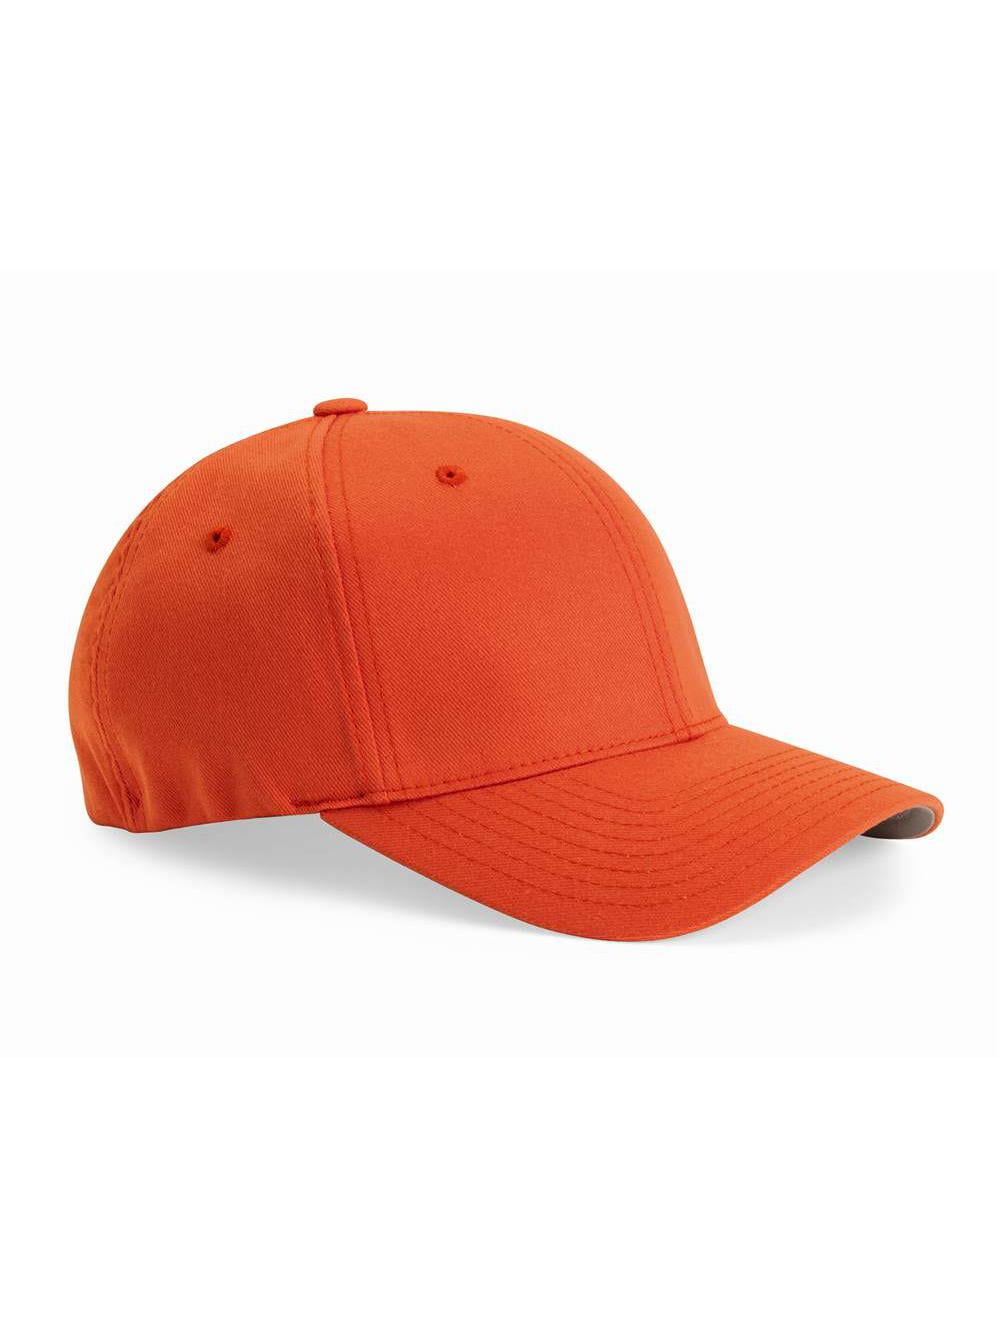 Flexfit - Cotton Blend Cap - 6277 - Spicy Orange - Size: S/M 